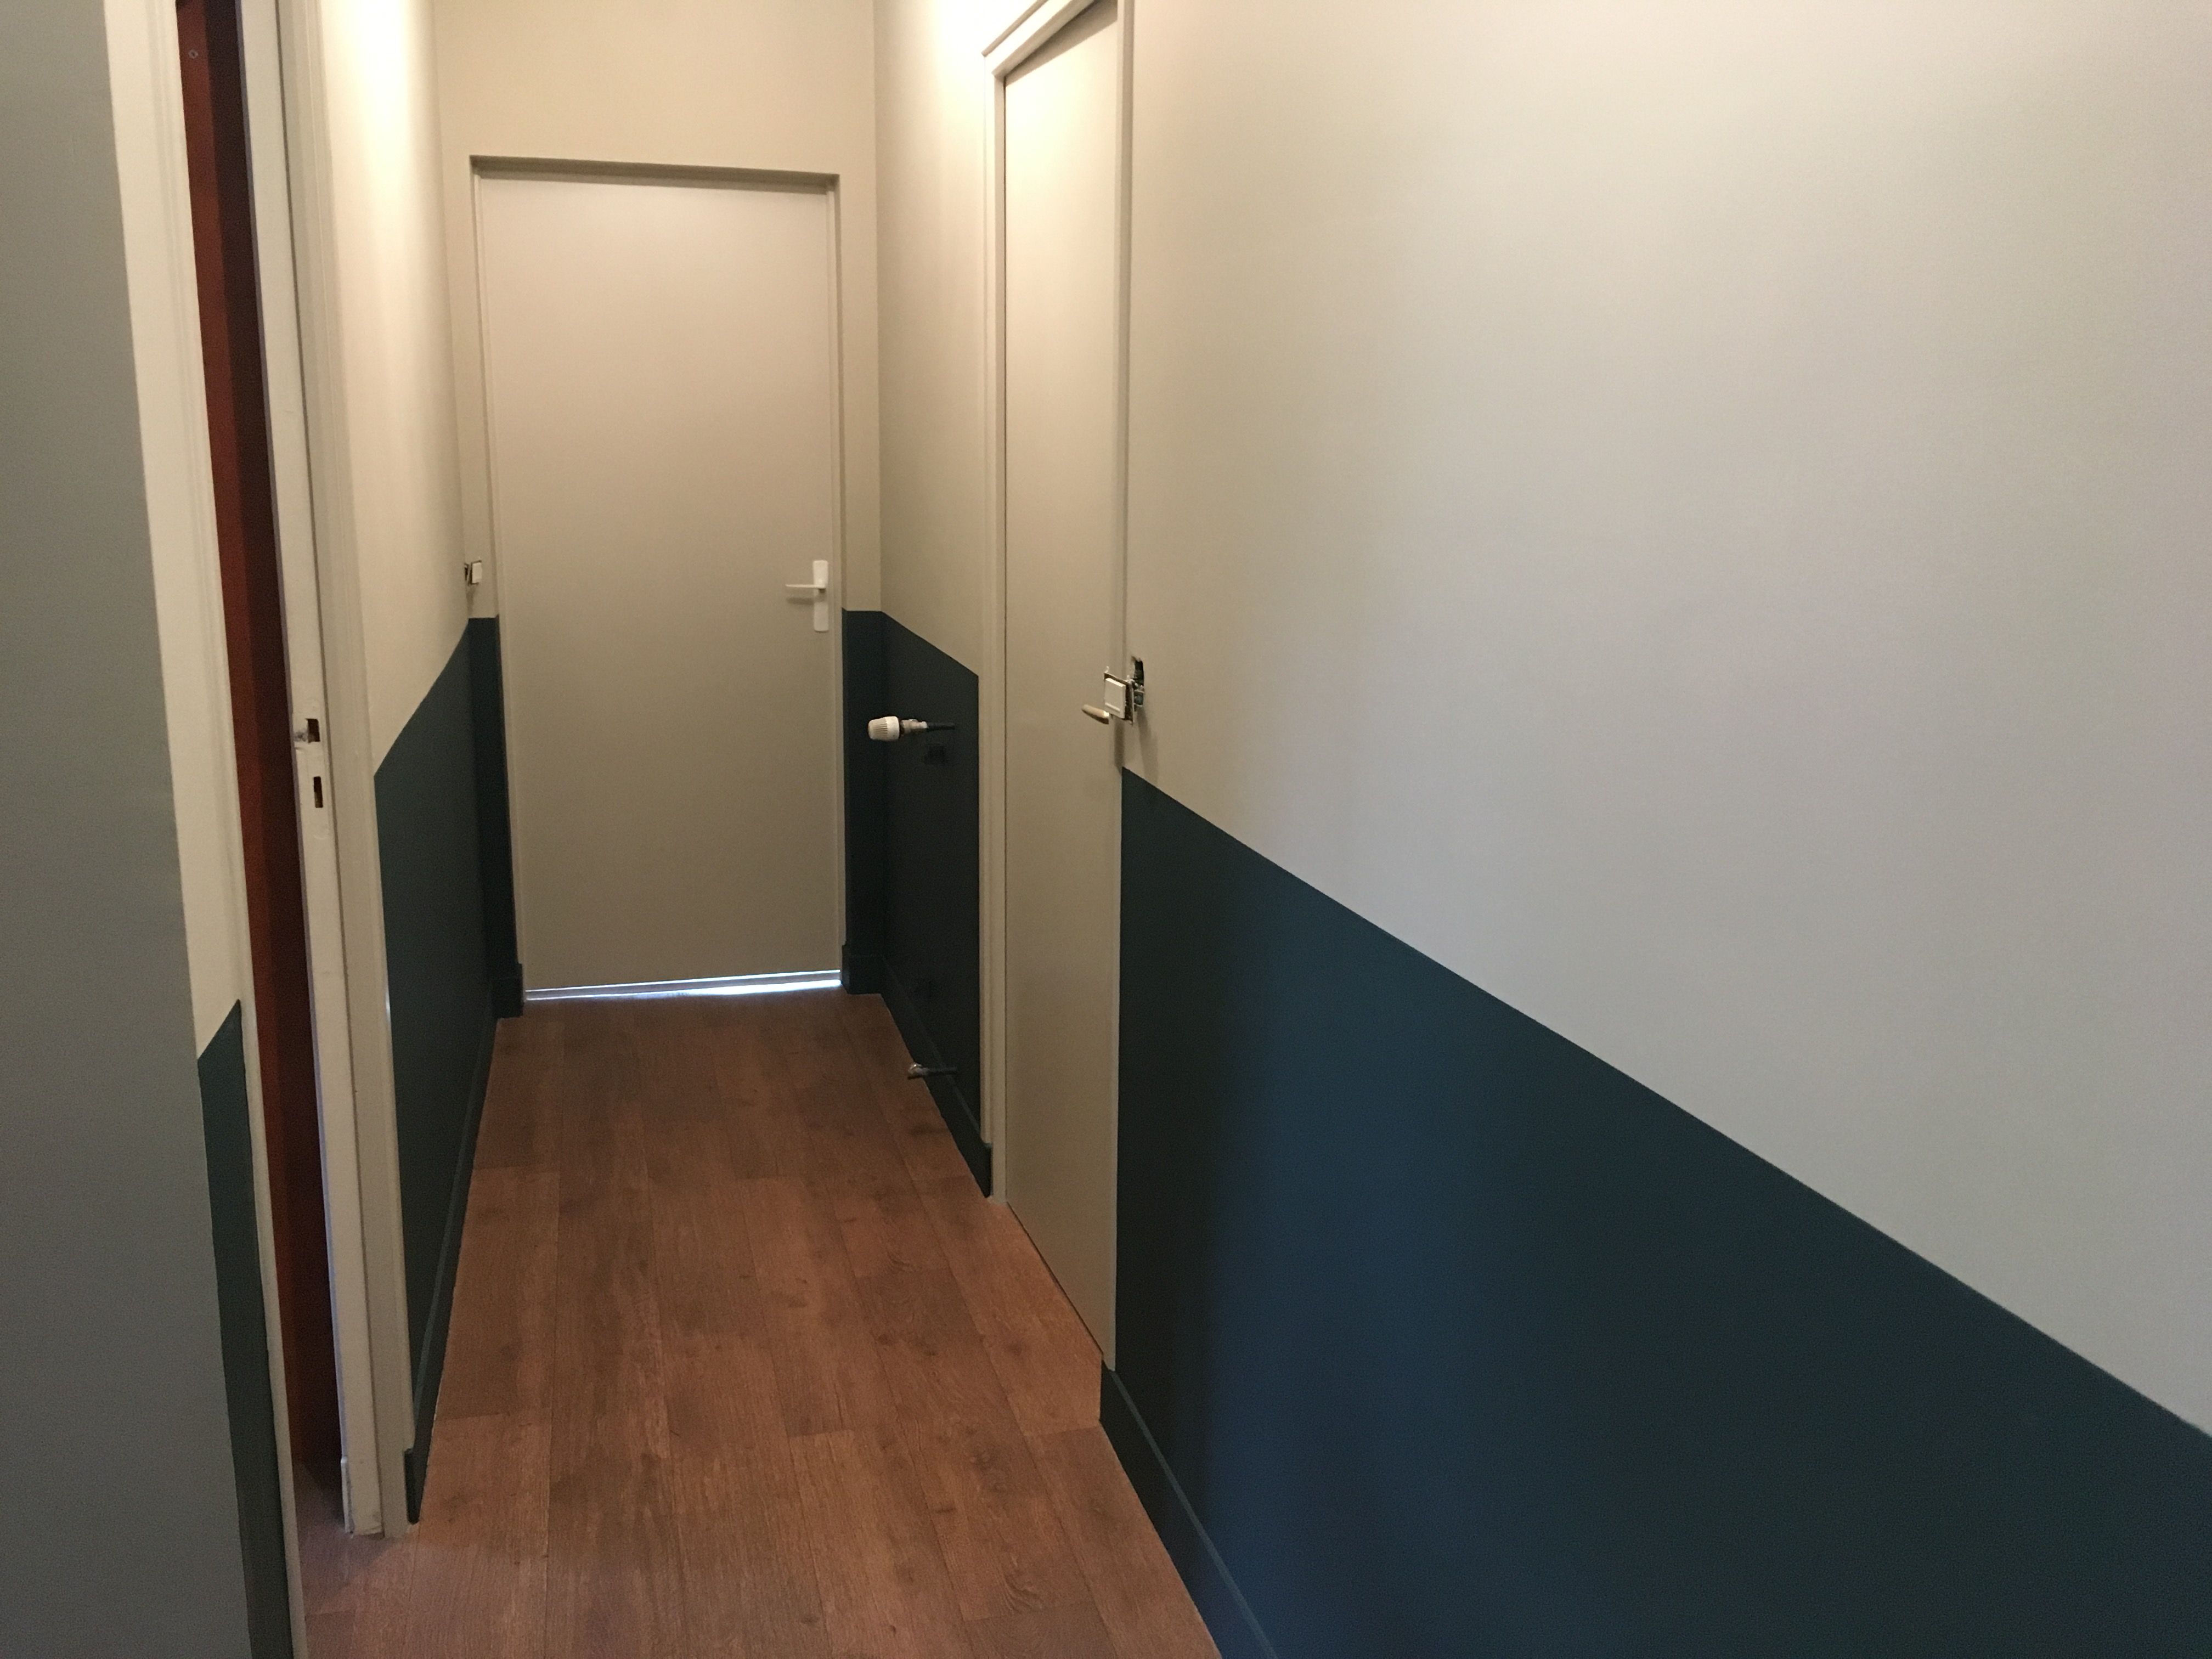 Rénovation d'un couloir